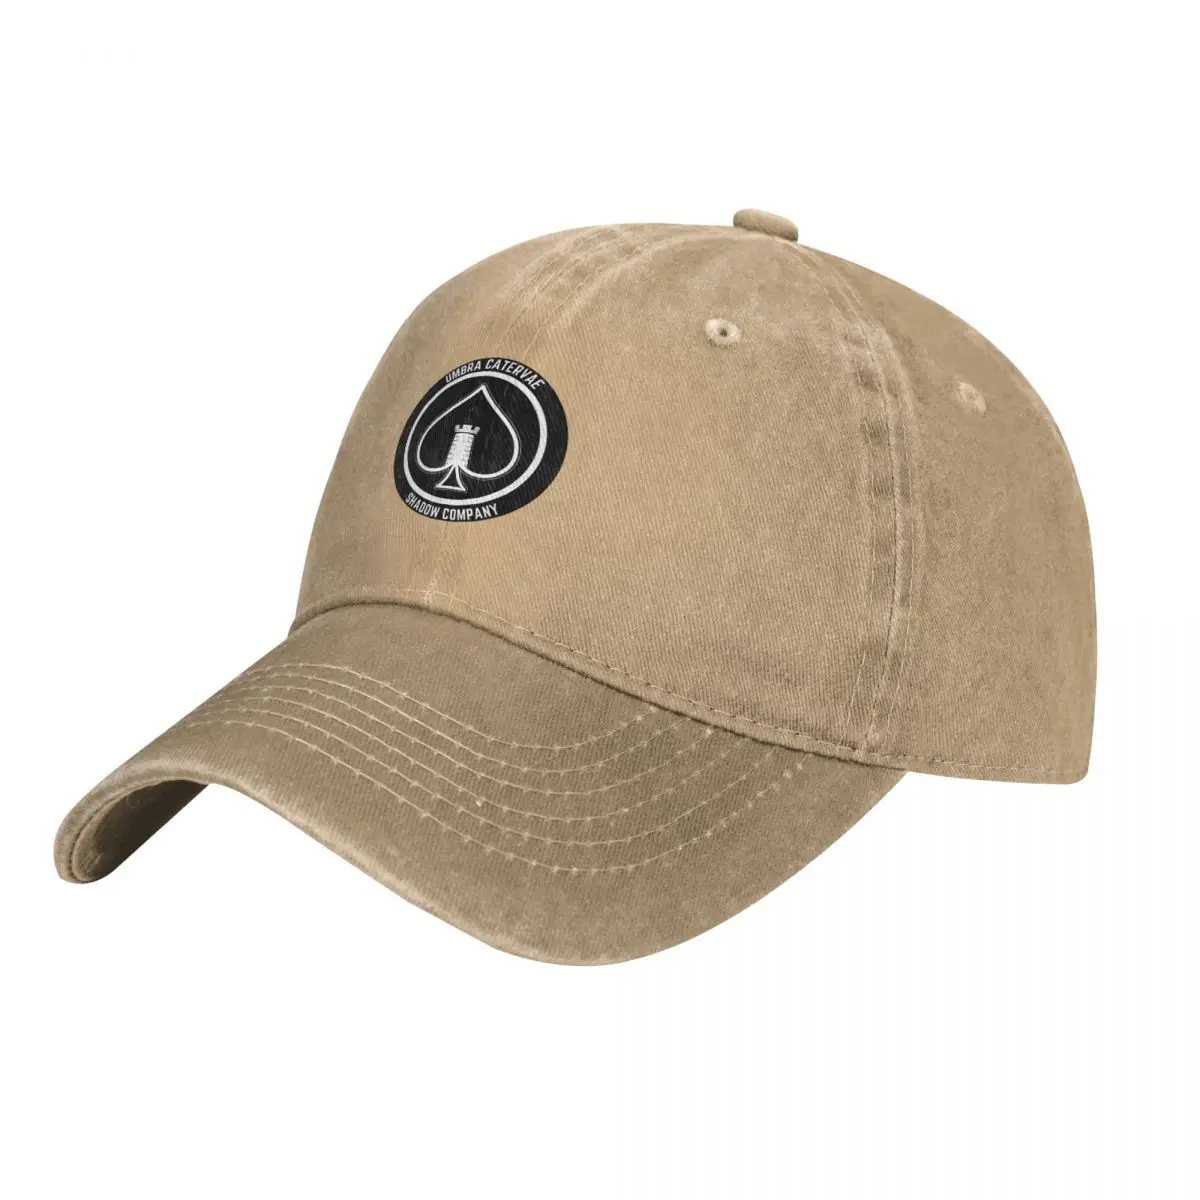 Shadow Company Emblem Cap Cowboy Hat bucket hat Sun cap military tactica... - £17.37 GBP